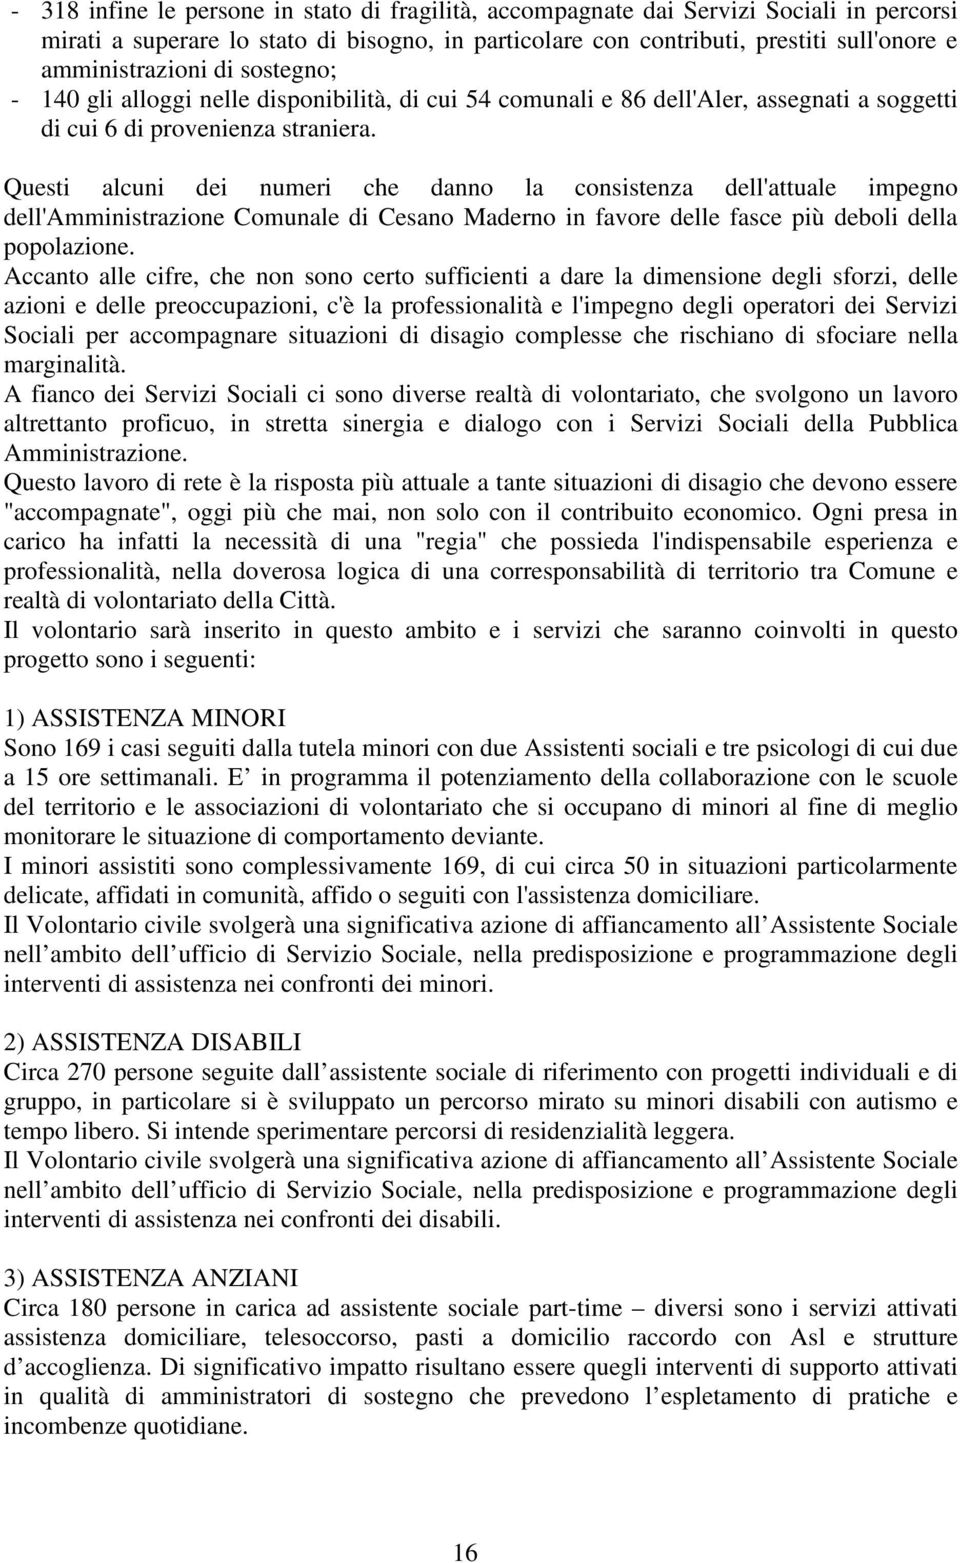 Questi alcuni dei numeri che danno la consistenza dell'attuale impegno dell'amministrazione Comunale di Cesano Maderno in favore delle fasce più deboli della popolazione.